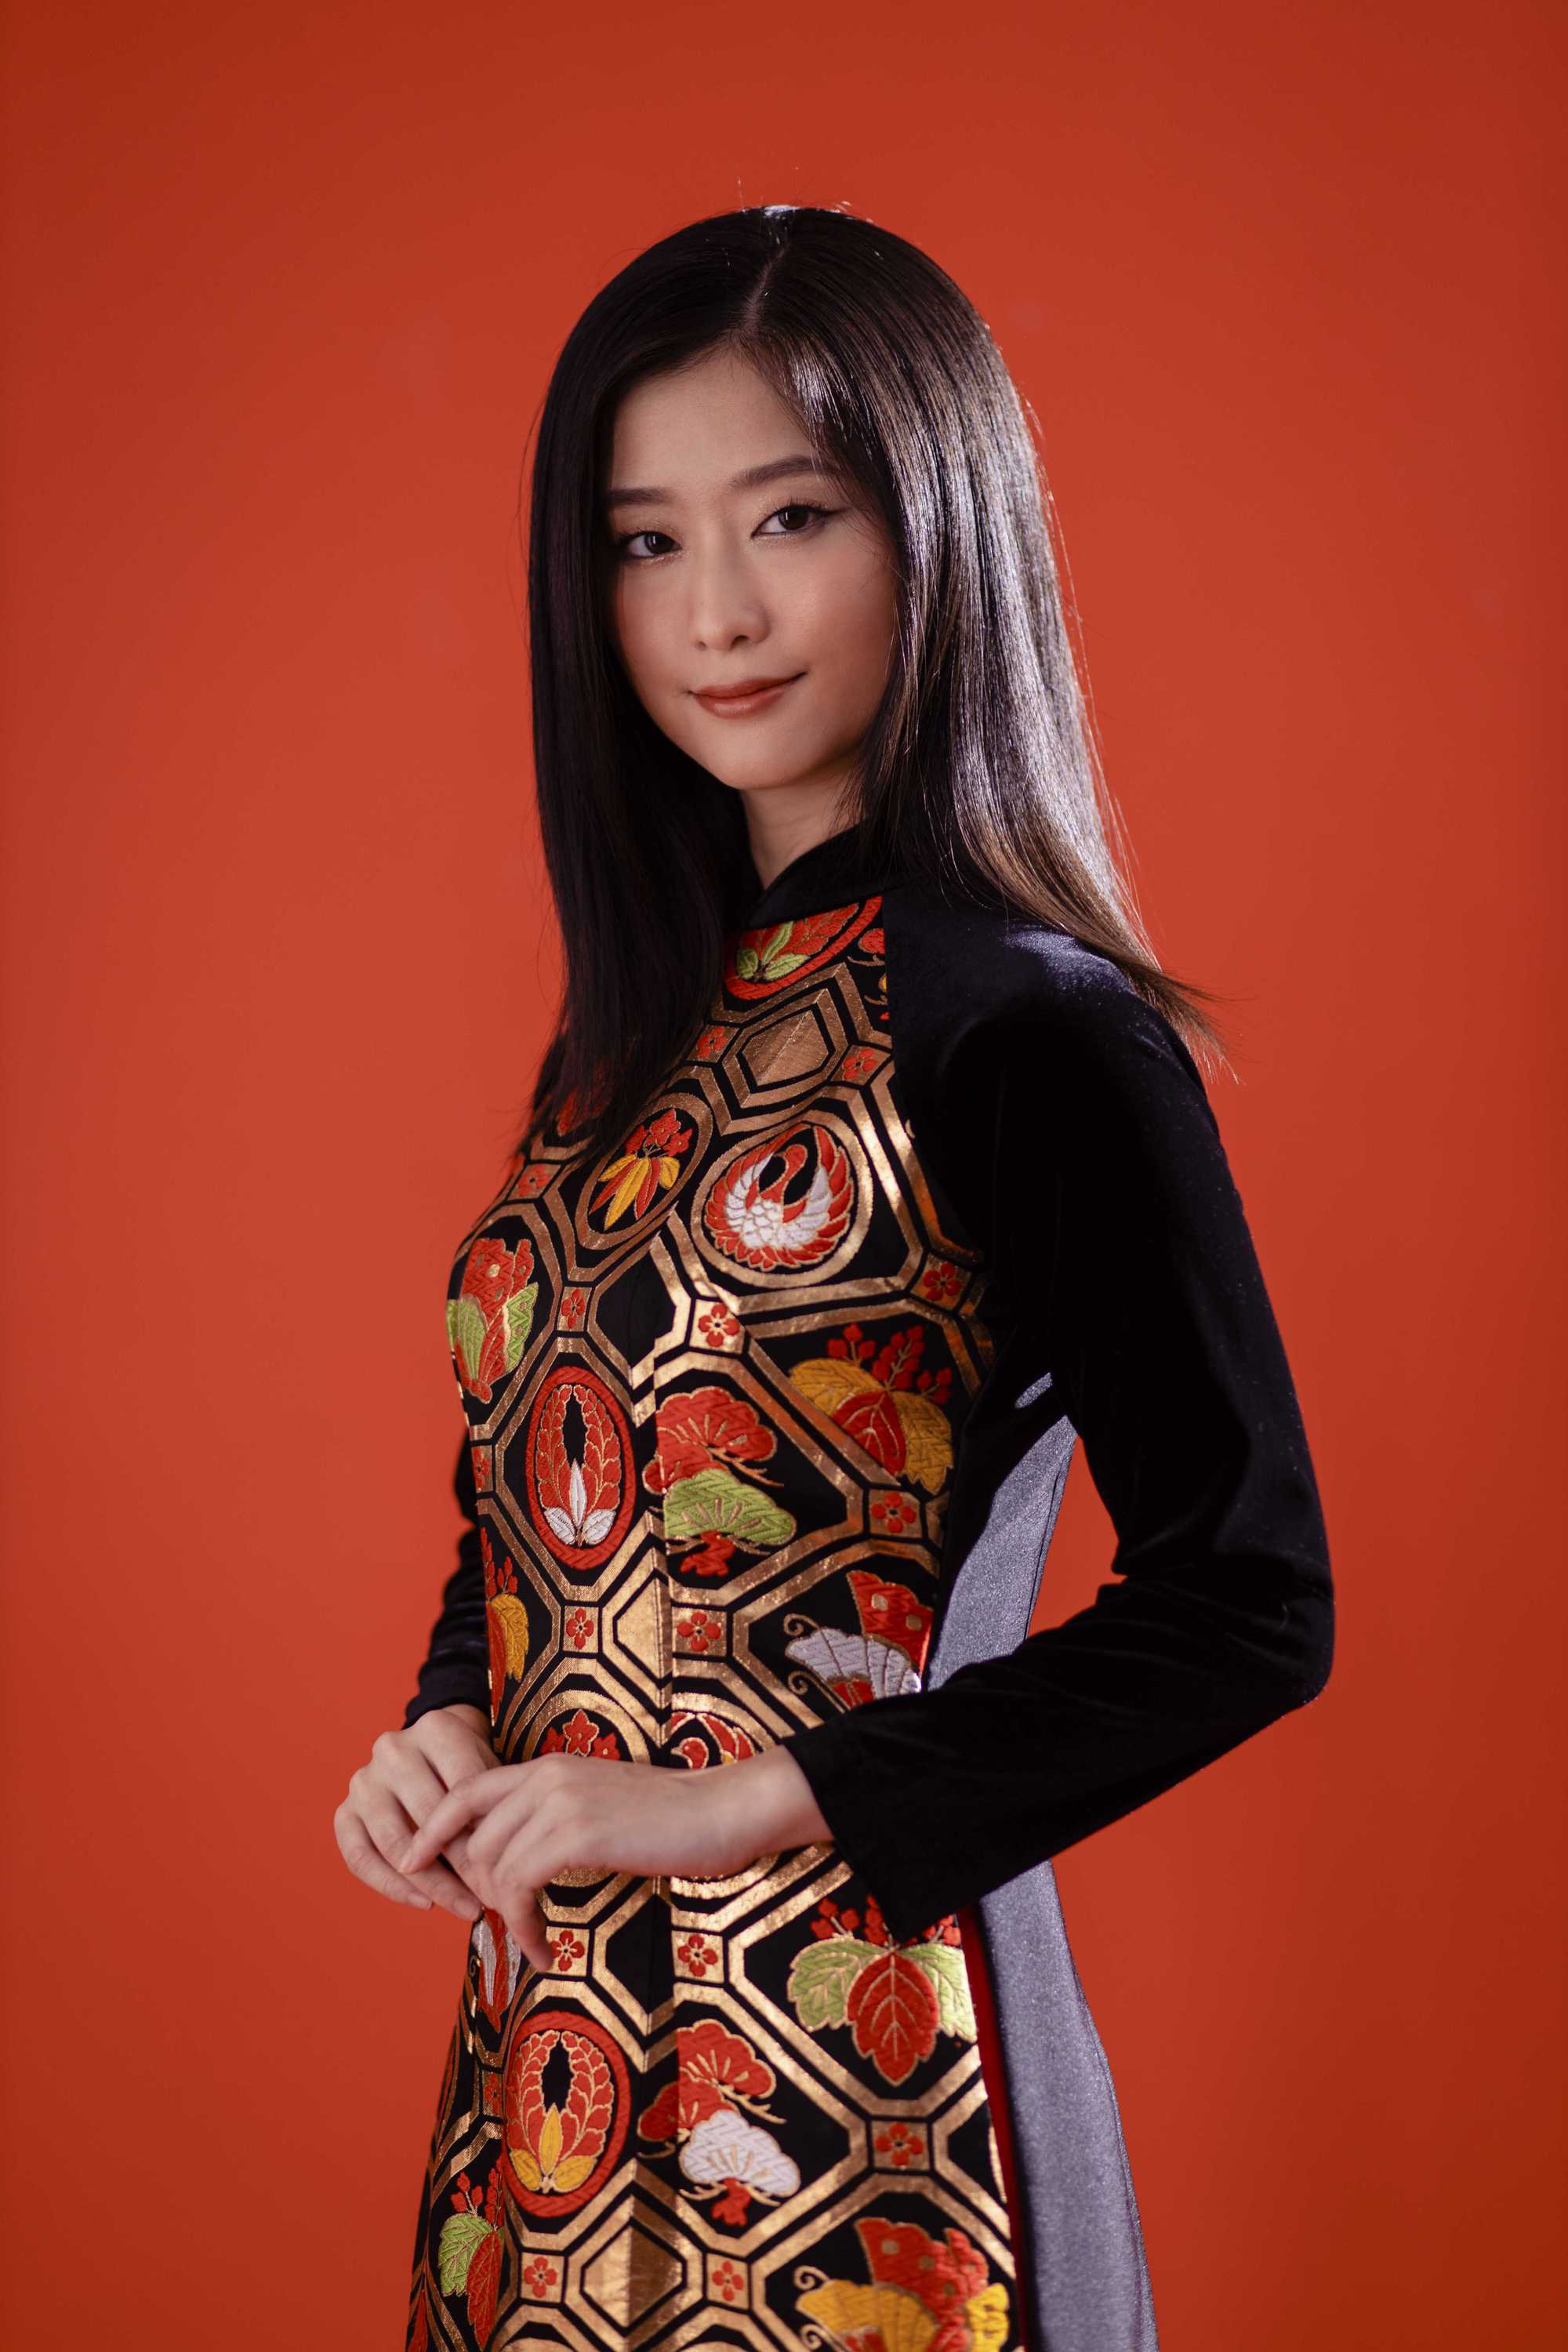 Nàng thơ phim “Em và Trịnh” diện áo dài Việt lấy cảm hứng từ văn hóa Nhật - Ảnh 3.